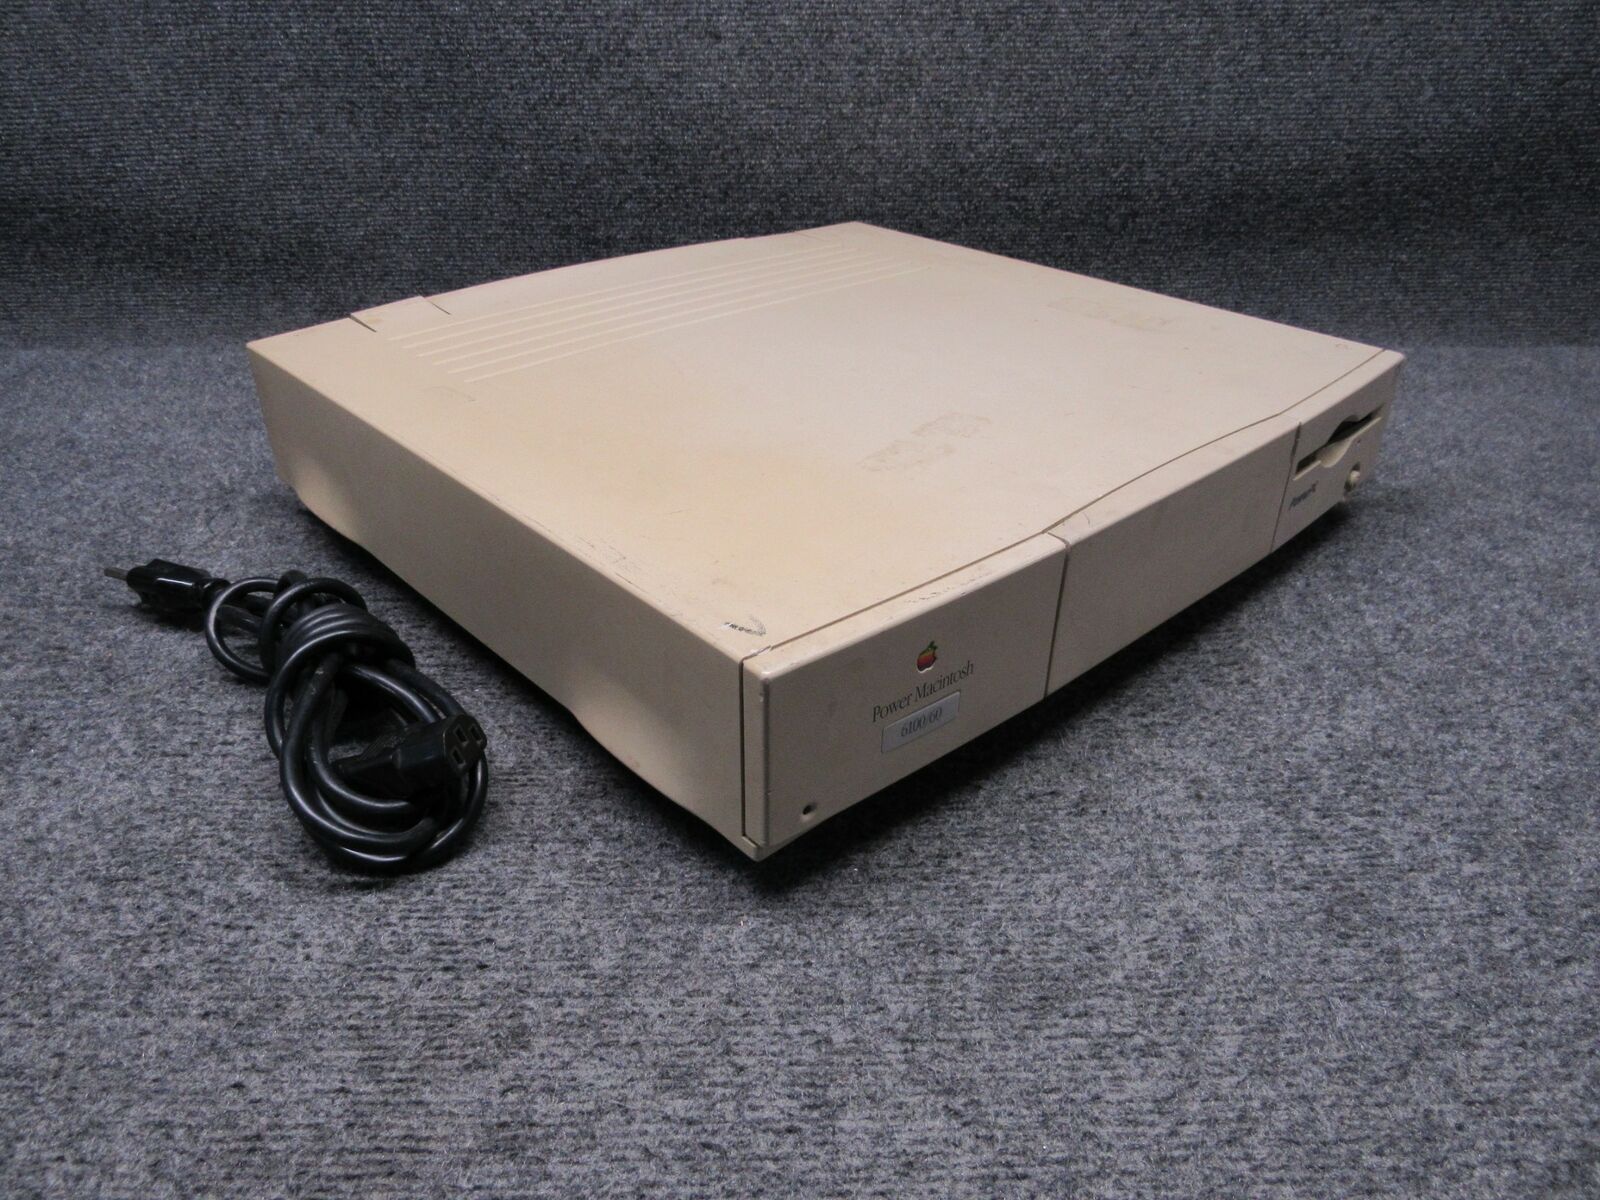 Vintage Apple Power Macintosh 6100/60 Model M1596 *Sold As Is*